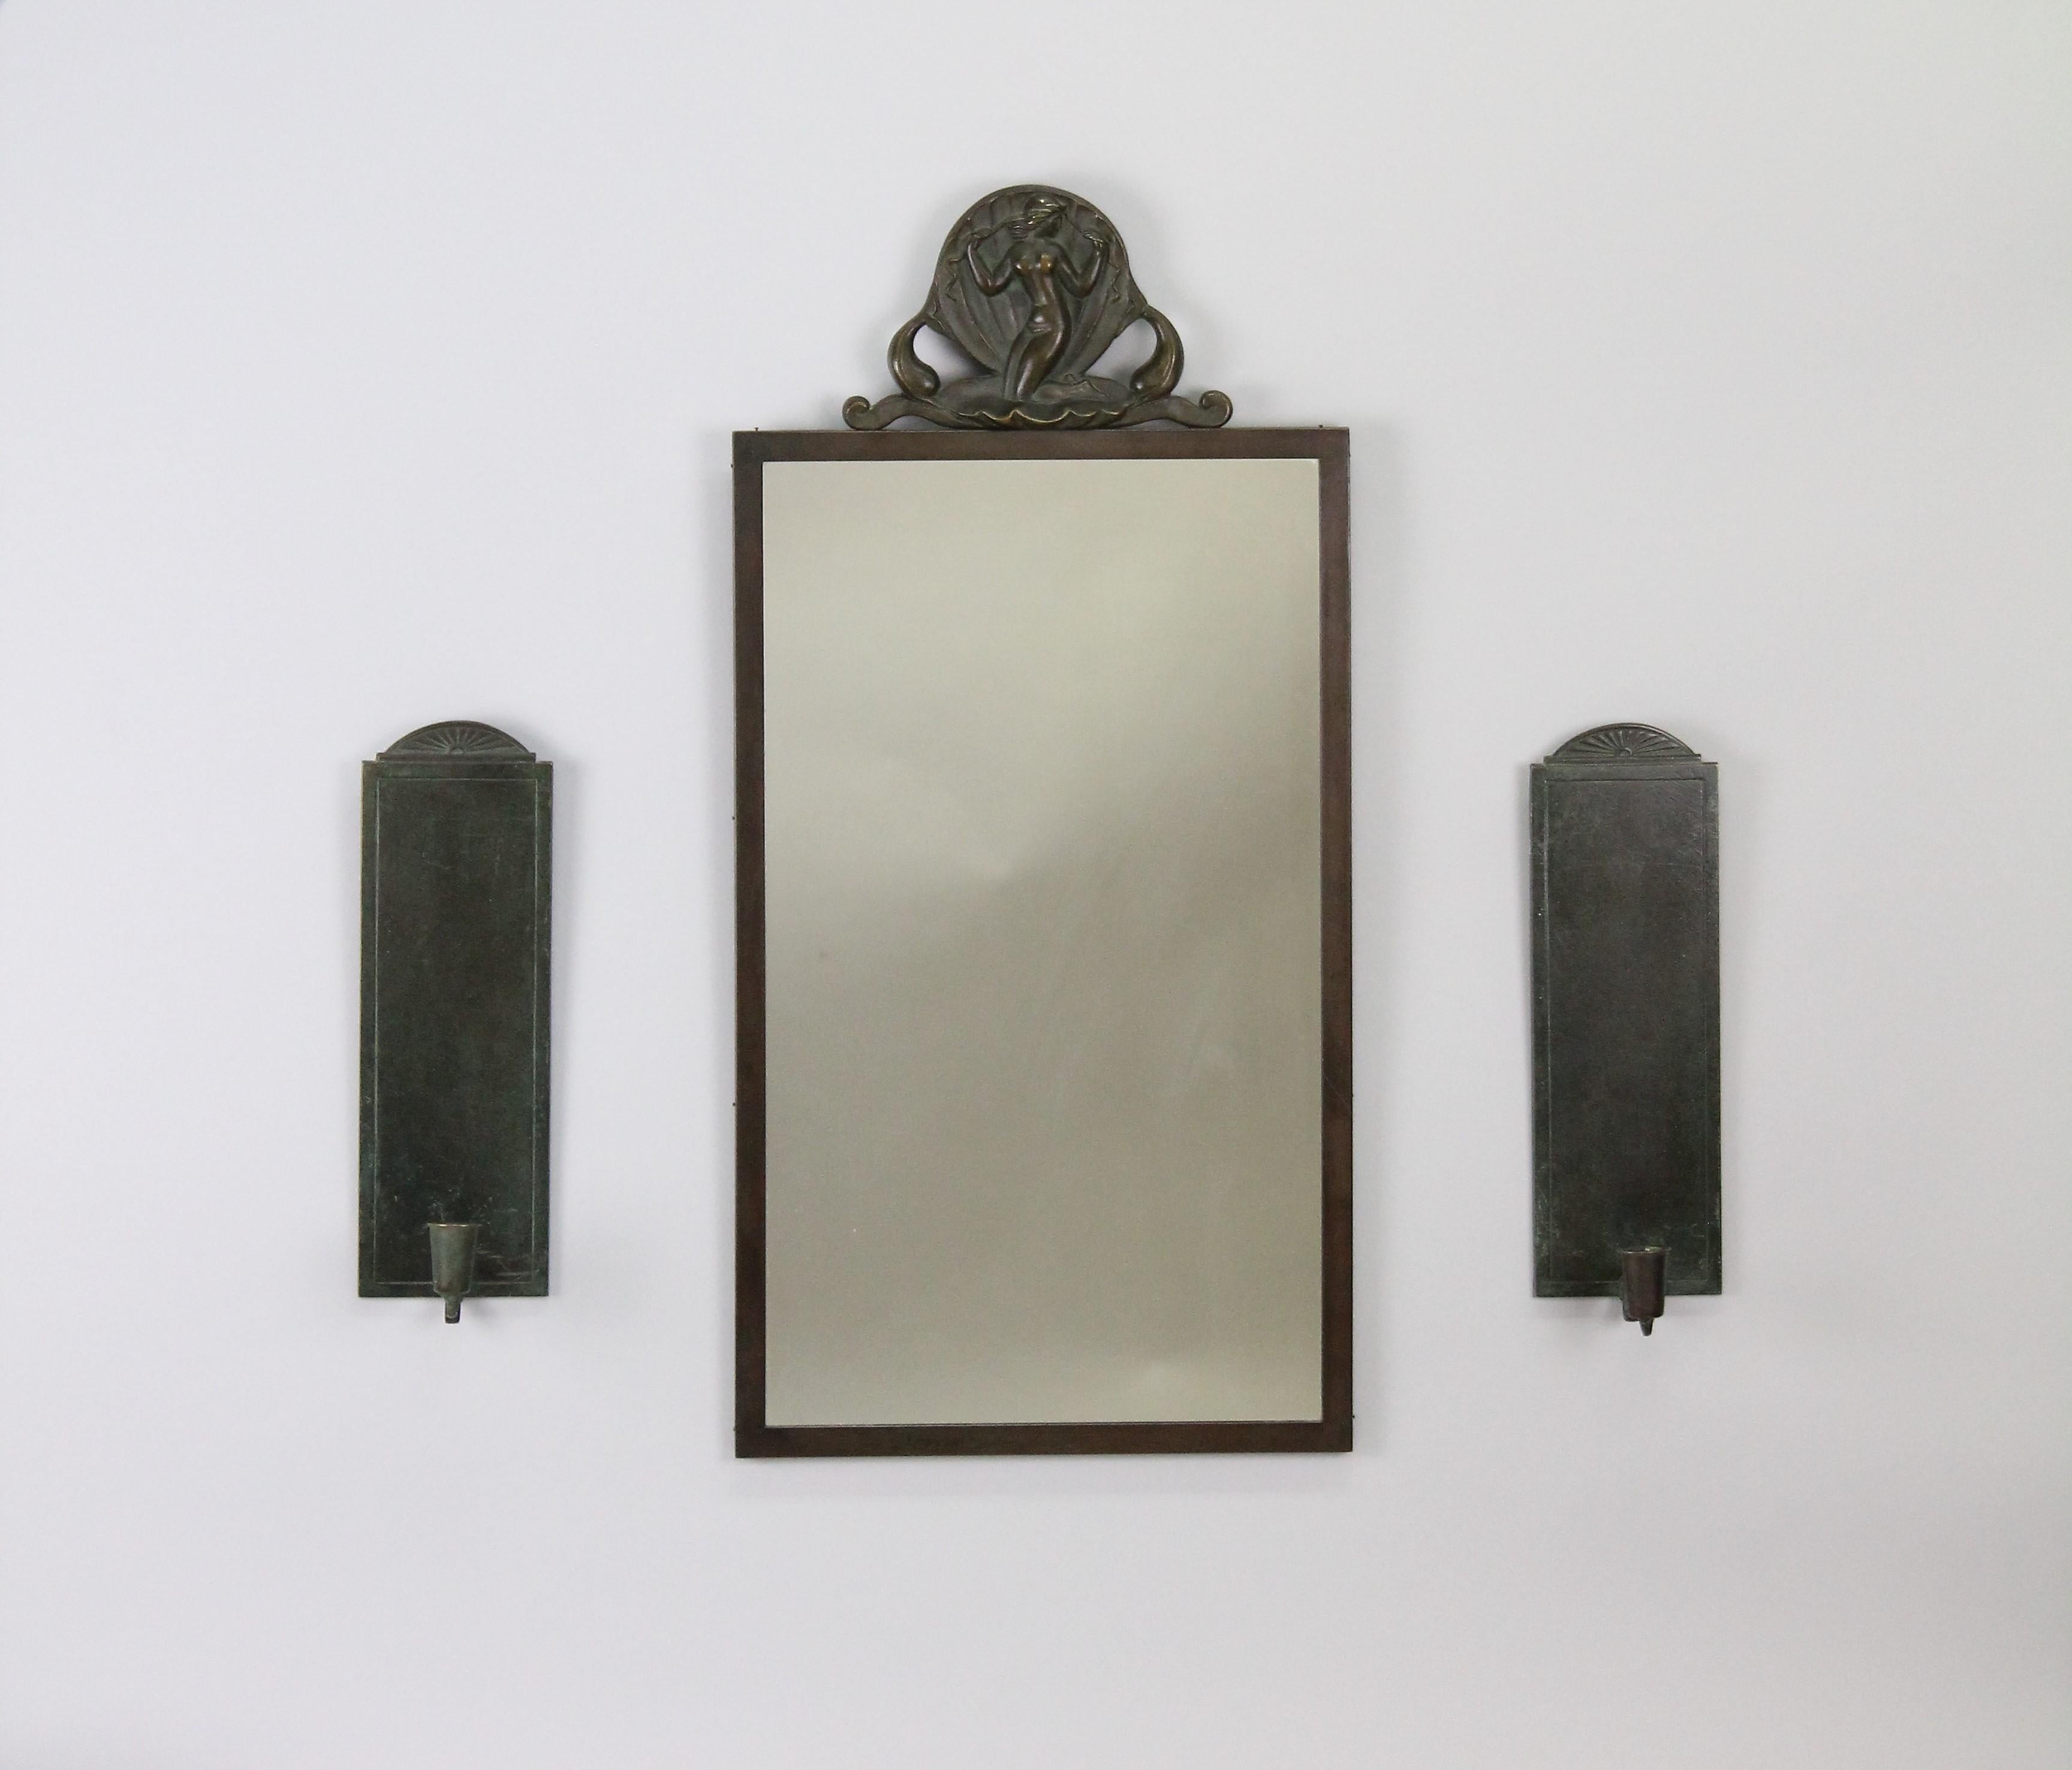 Un très bel ensemble composé d'un miroir et d'une paire de scones.
Fabriqué en Suède par Oscar Antonsson pour Ystad Brons dans les années 1930.
Très bon état d'origine, aucun problème !
Fabriqué en bronze patiné dans des couleurs vertes et